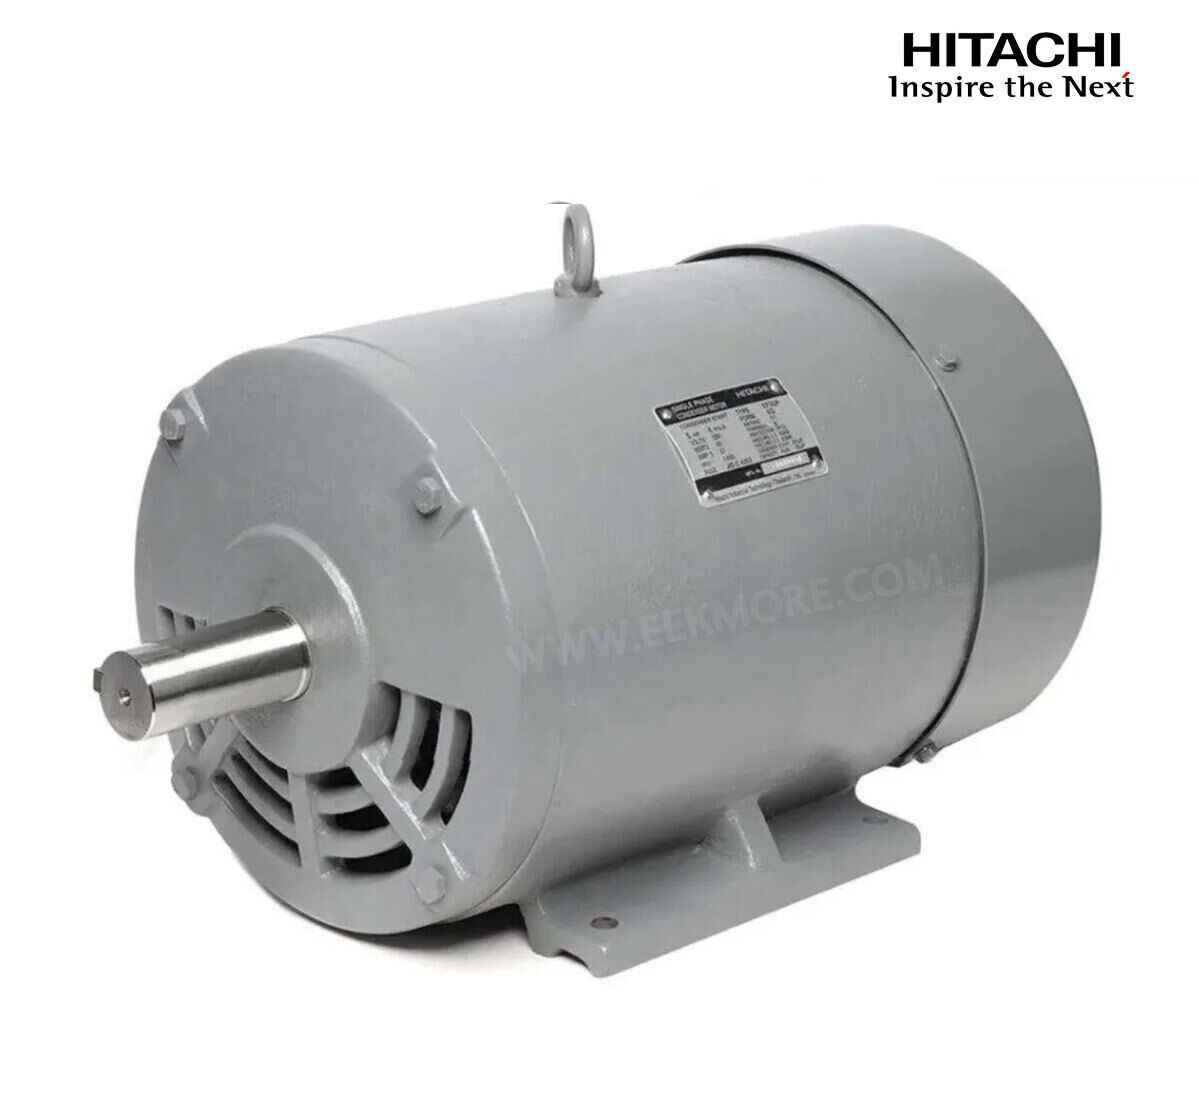 มอเตอร์ฮิตาชิของแท้ 100% HITACHI รุ่น EFOUP-KQ กำลัง 5 แรงม้า (3.7 KW.) กำลังไฟฟ้าที่ใช้ 220V ความเร็วรอบตัวเปล่า 1450 RPM แกนเพลามอเตอร์ 38 MM.รับประกัน 3 ปี มีของพร้อมจัดส่งทุกวัน